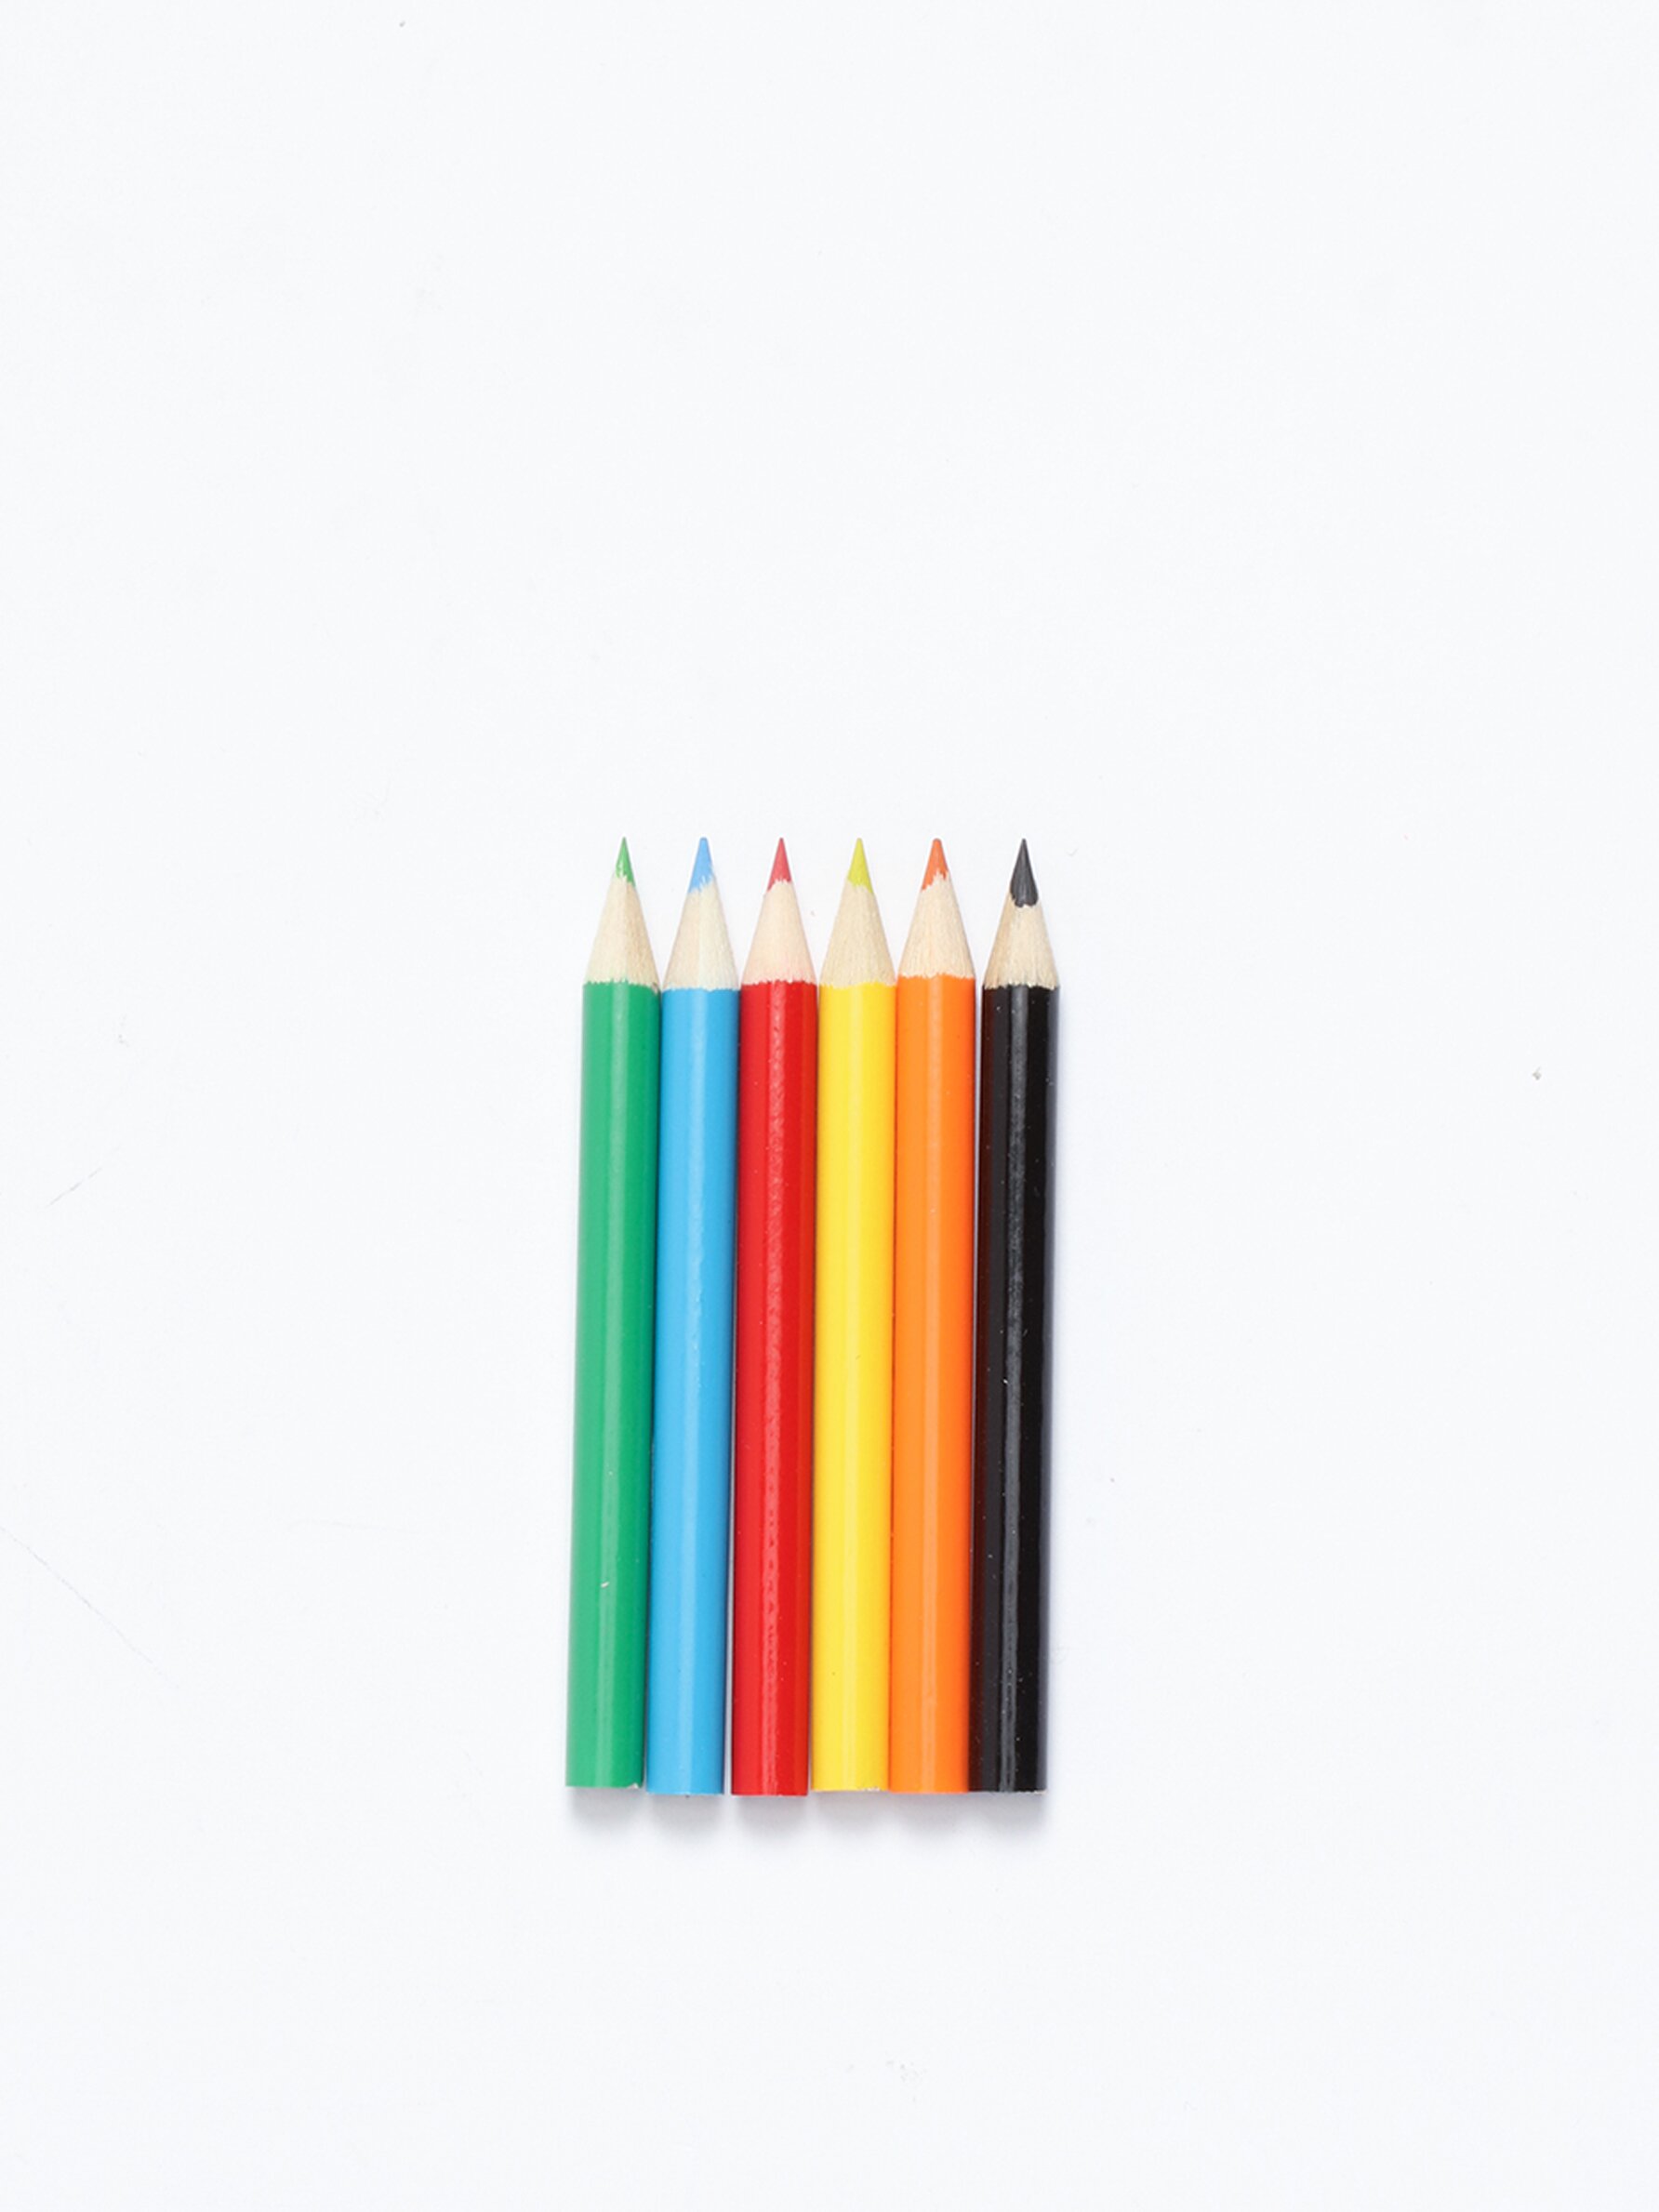 Set libreta, lápices y pegatinas Frozen ©Disney - ACCESORIOS - Niña - Niños  